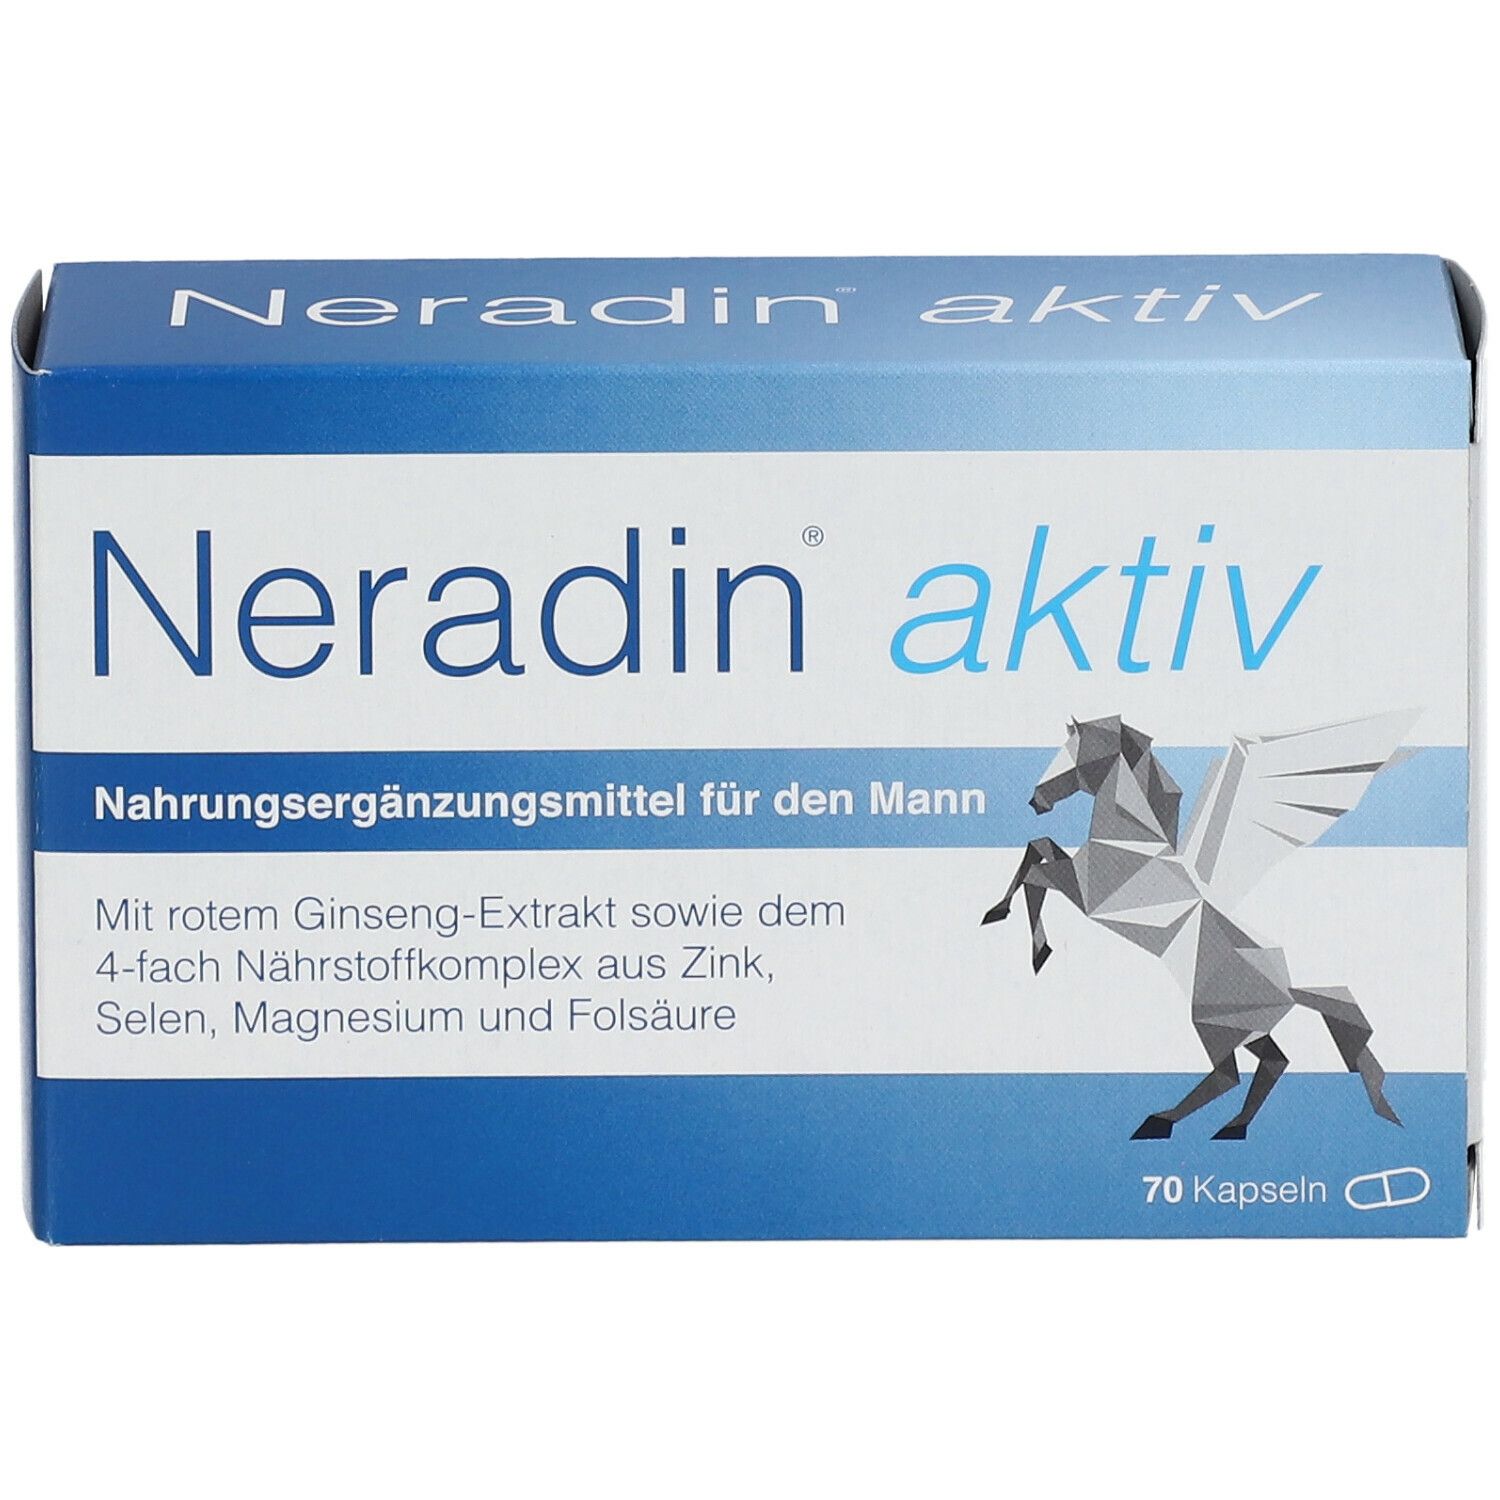 Neradin® aktiv